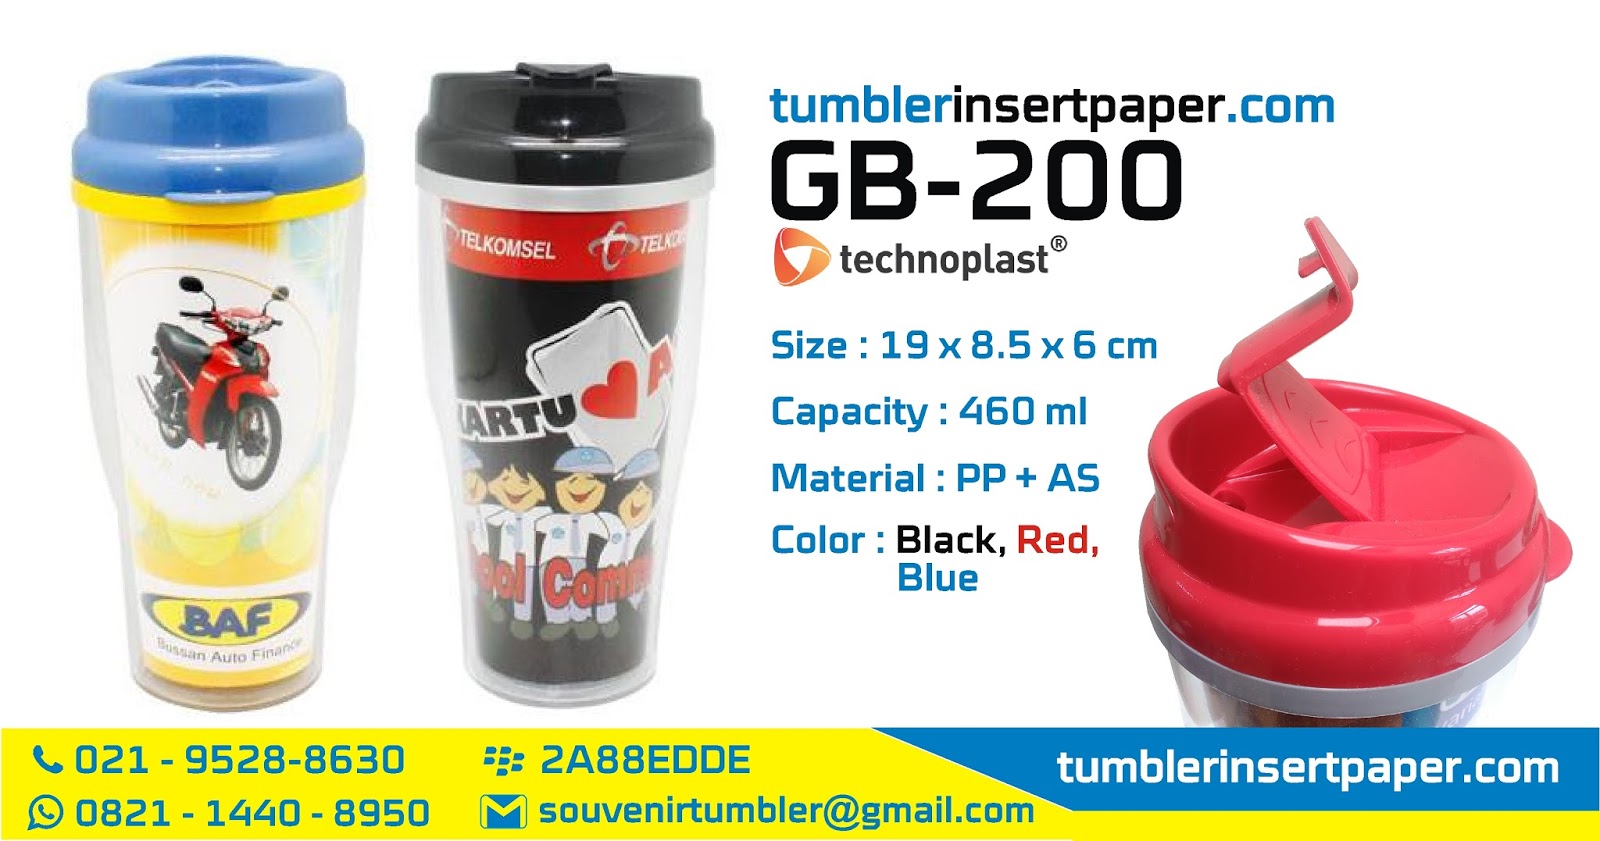 Download SOUVENIR MUG TUMBLER INSERT PAPER MURAH: TUMBLER INSERT PAPER TECHNOPLAST GB-200